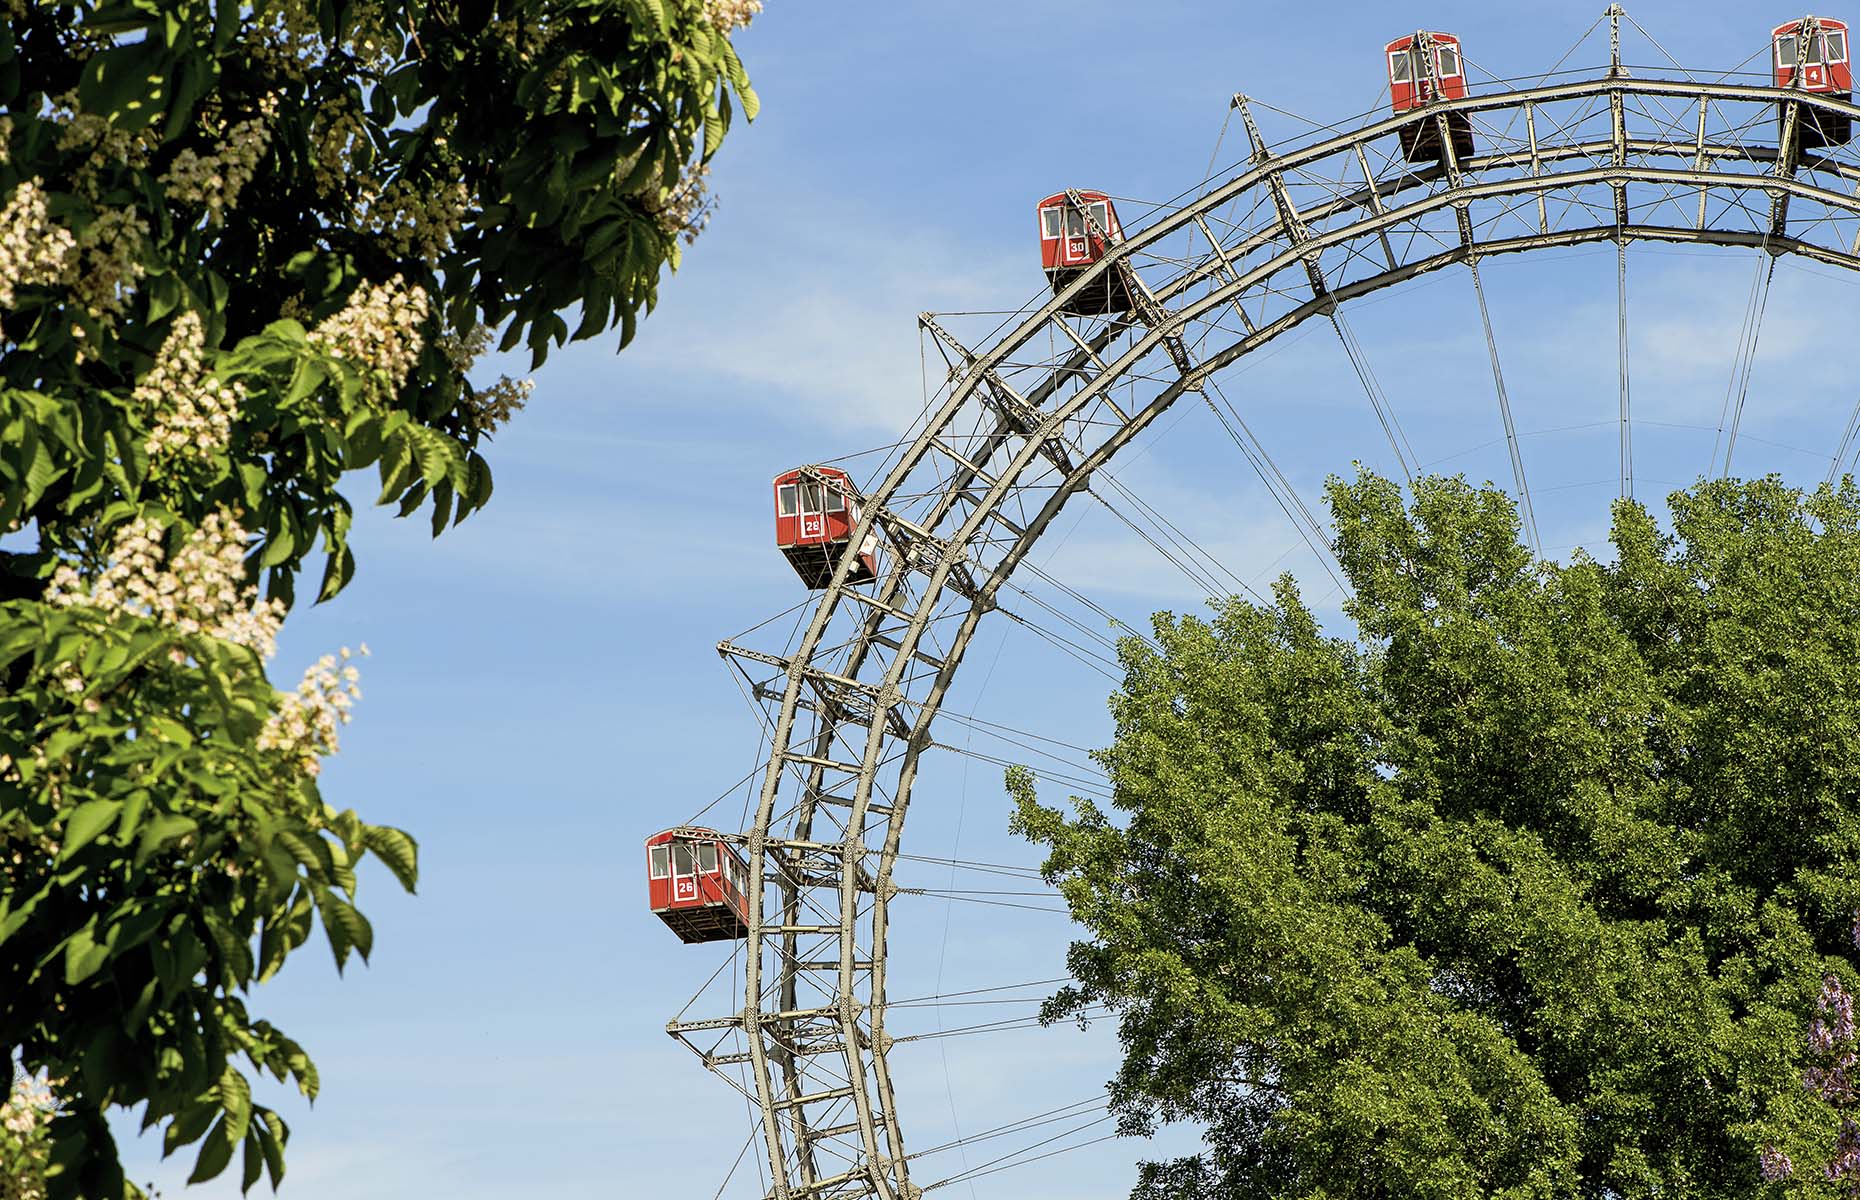 Prater theme park in Vienna (Image: © WienTourismus/Christian Stemper)